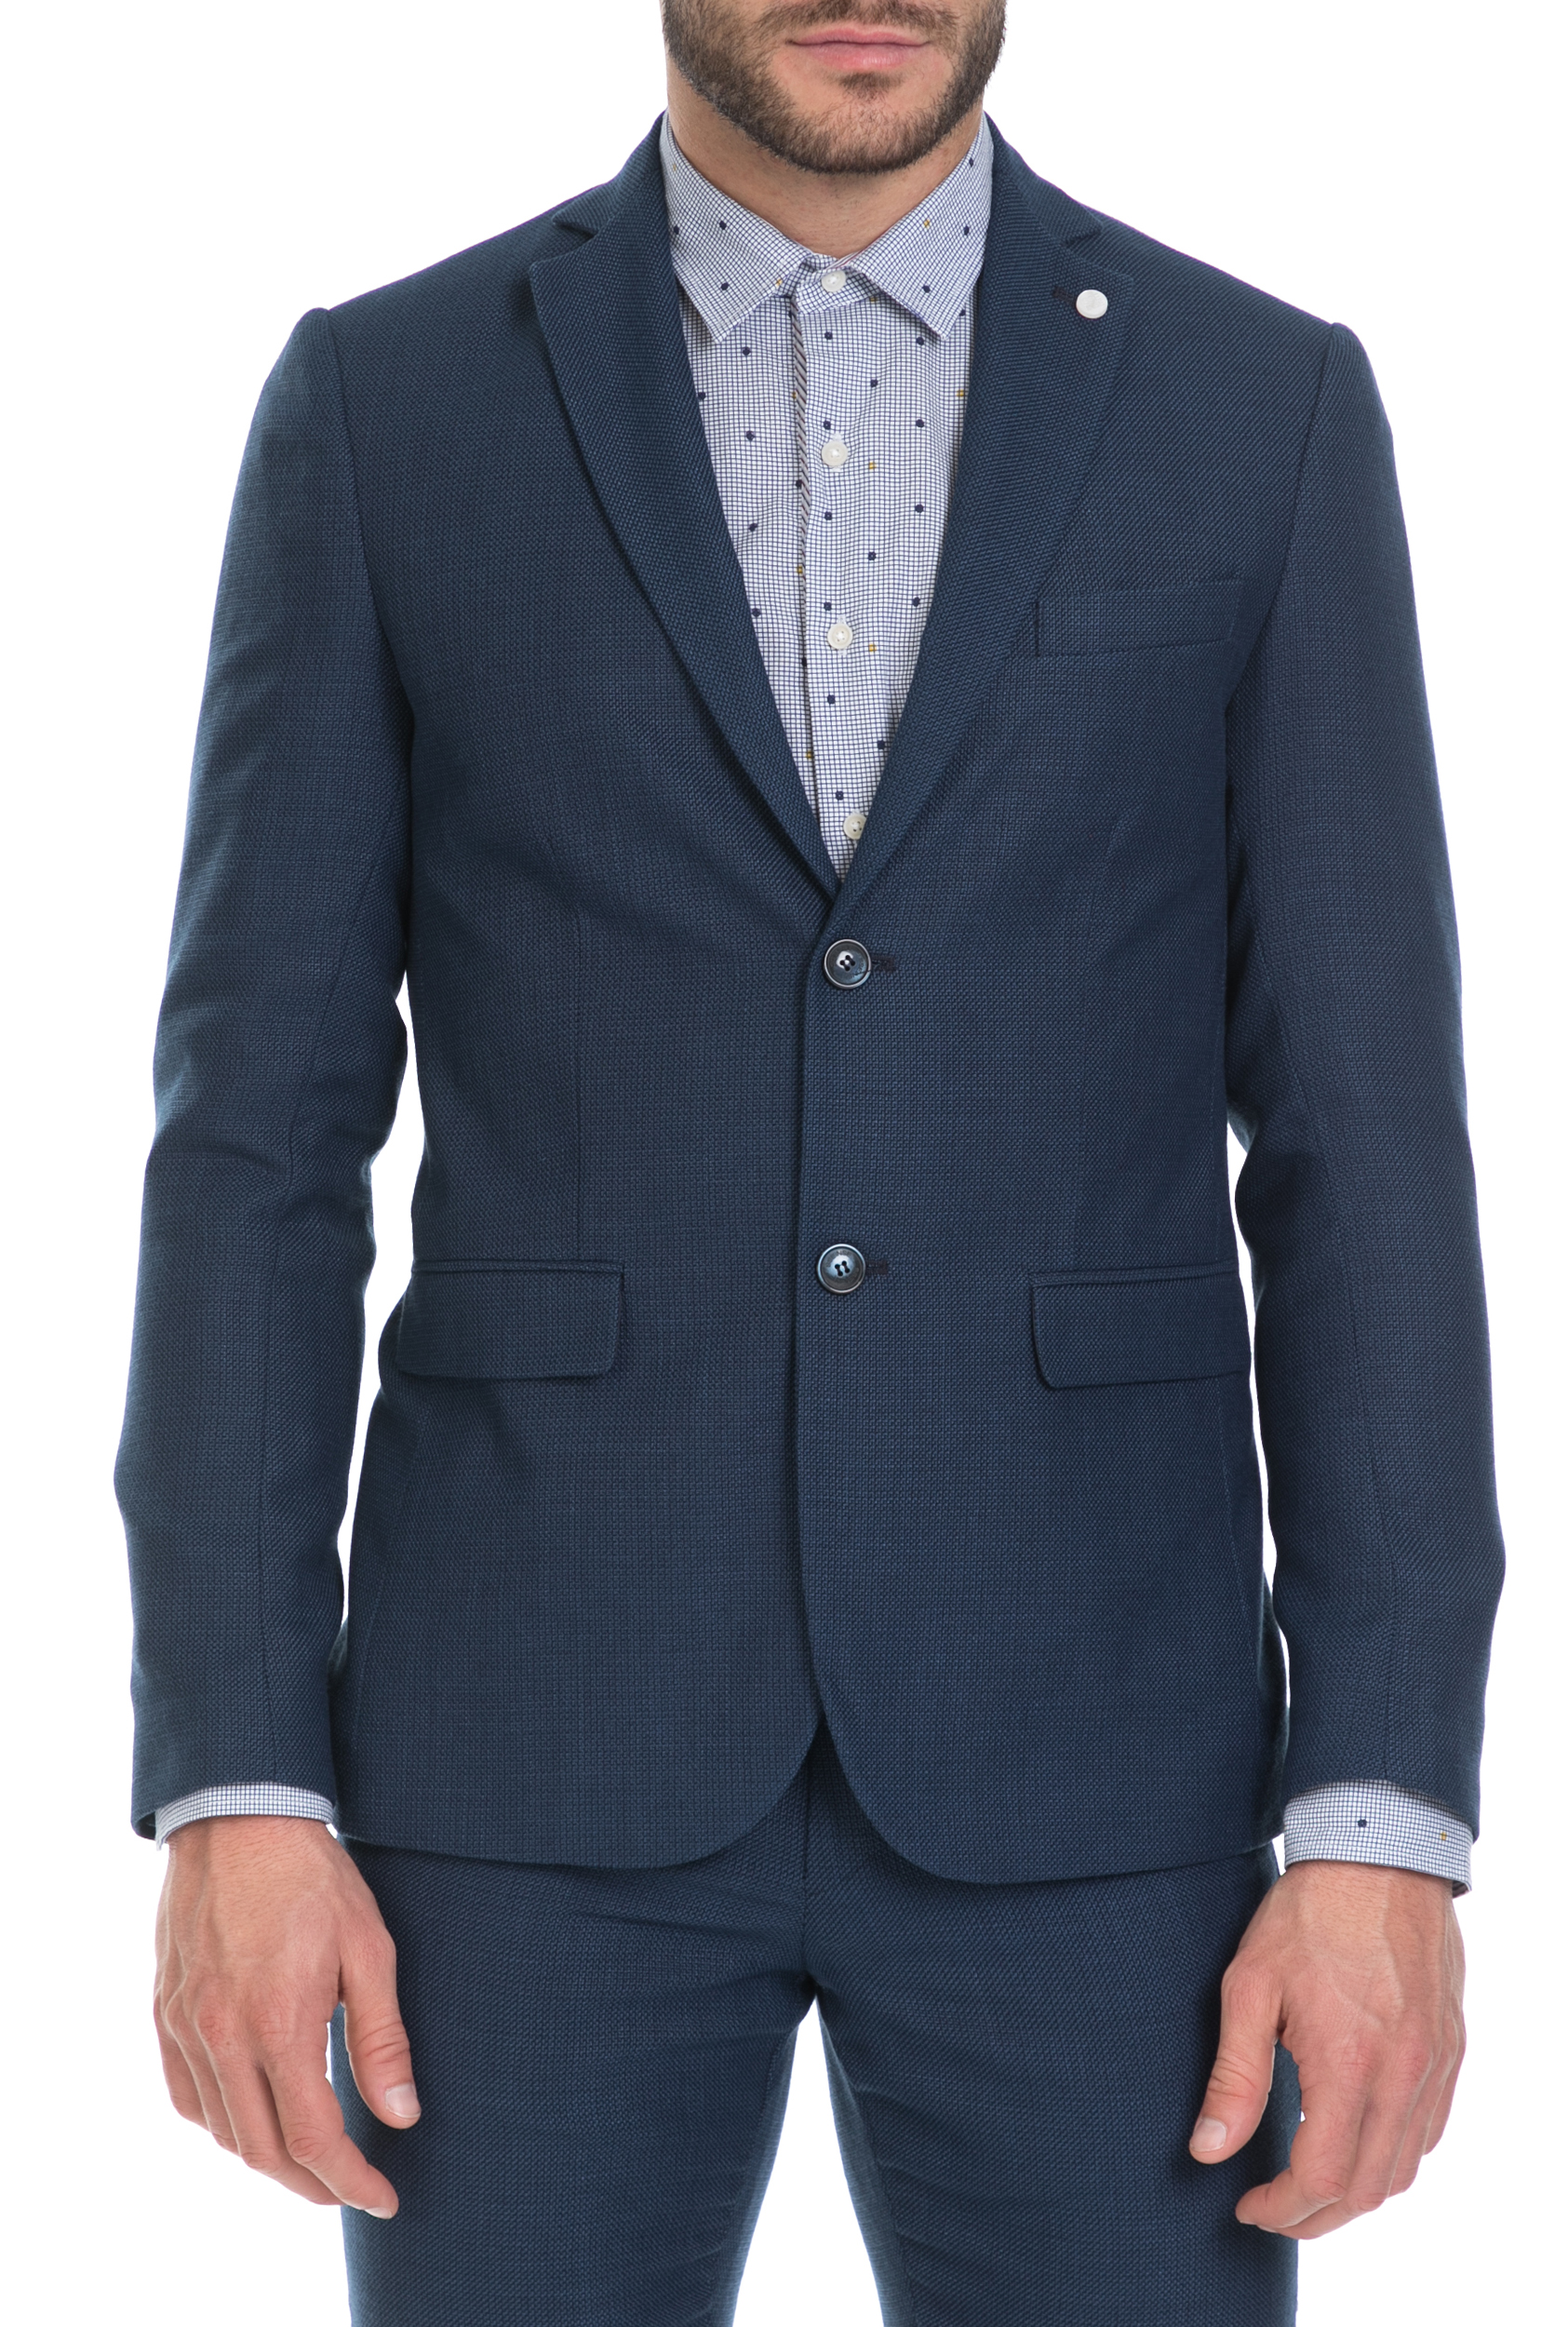 Ανδρικά/Ρούχα/Πανωφόρια/Σακάκια SSEINSE - Ανδρικό σακάκι SSEINSE μπλε